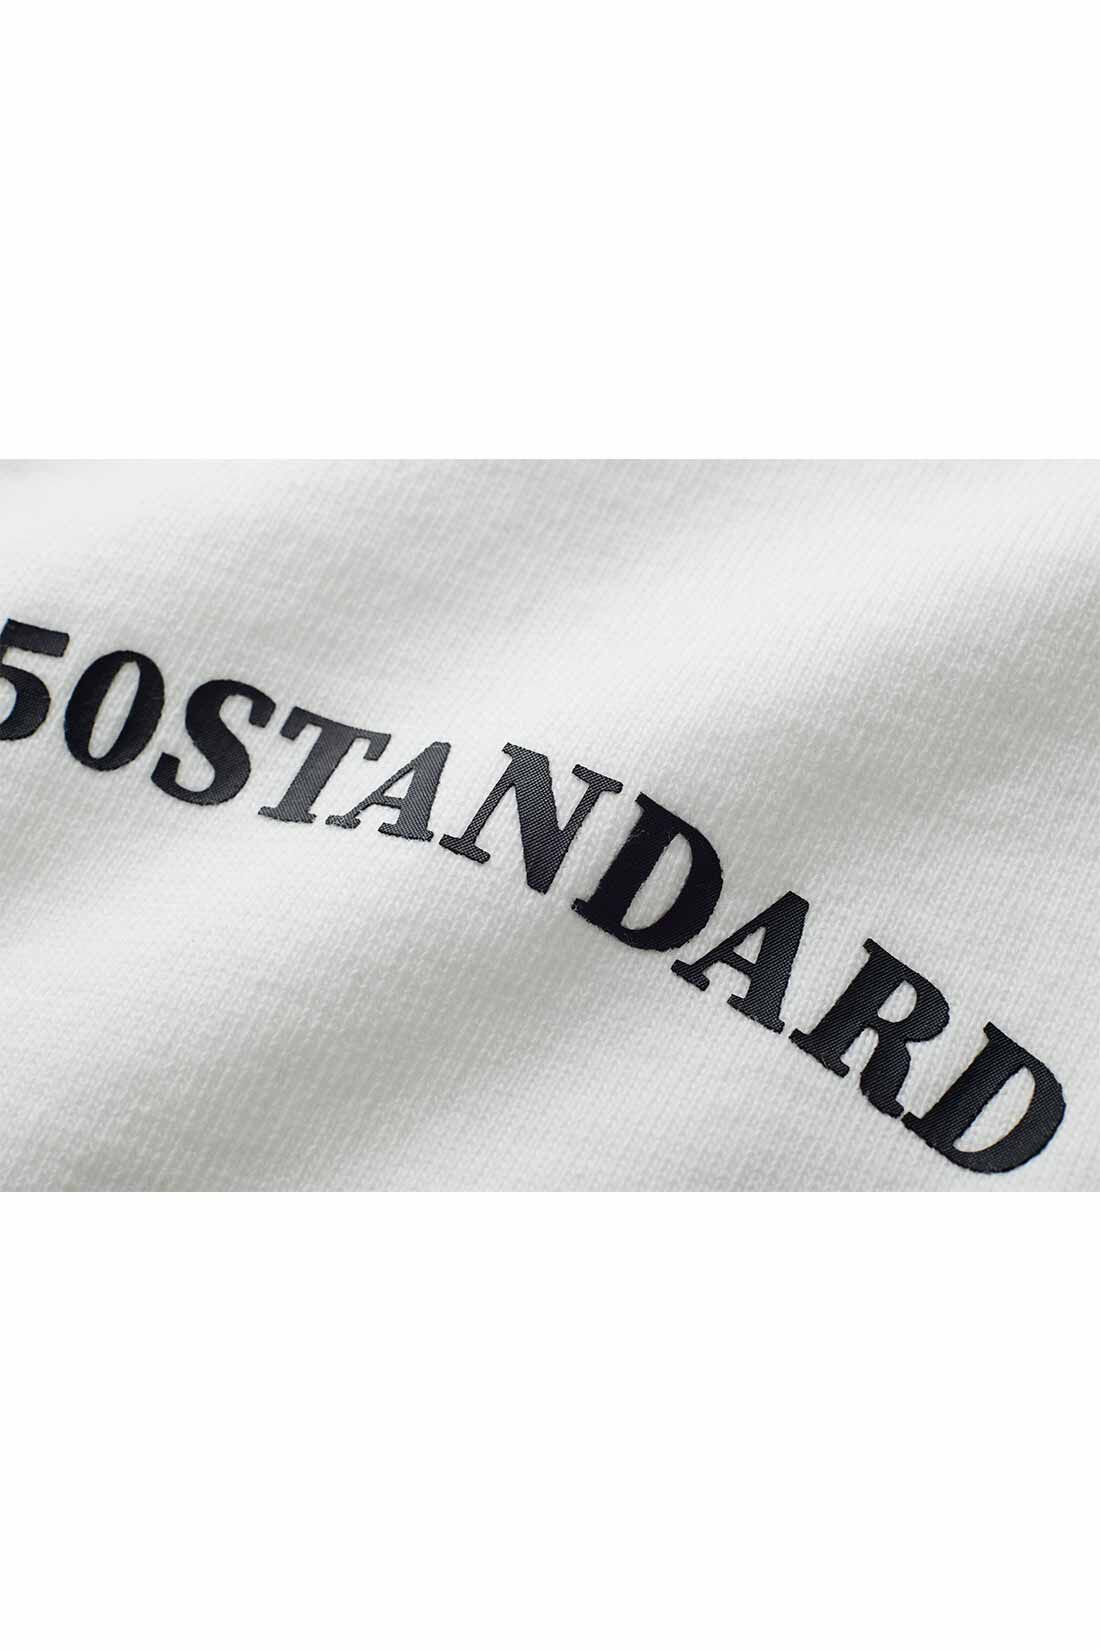 THREE FIFTY STANDARD|THREE FIFTY STANDARD モノトーンロゴTシャツ〈ブラック〉|控えめサイズのプリントロゴを胸のセンターに配置。　※お届けするカラーとは異なります。